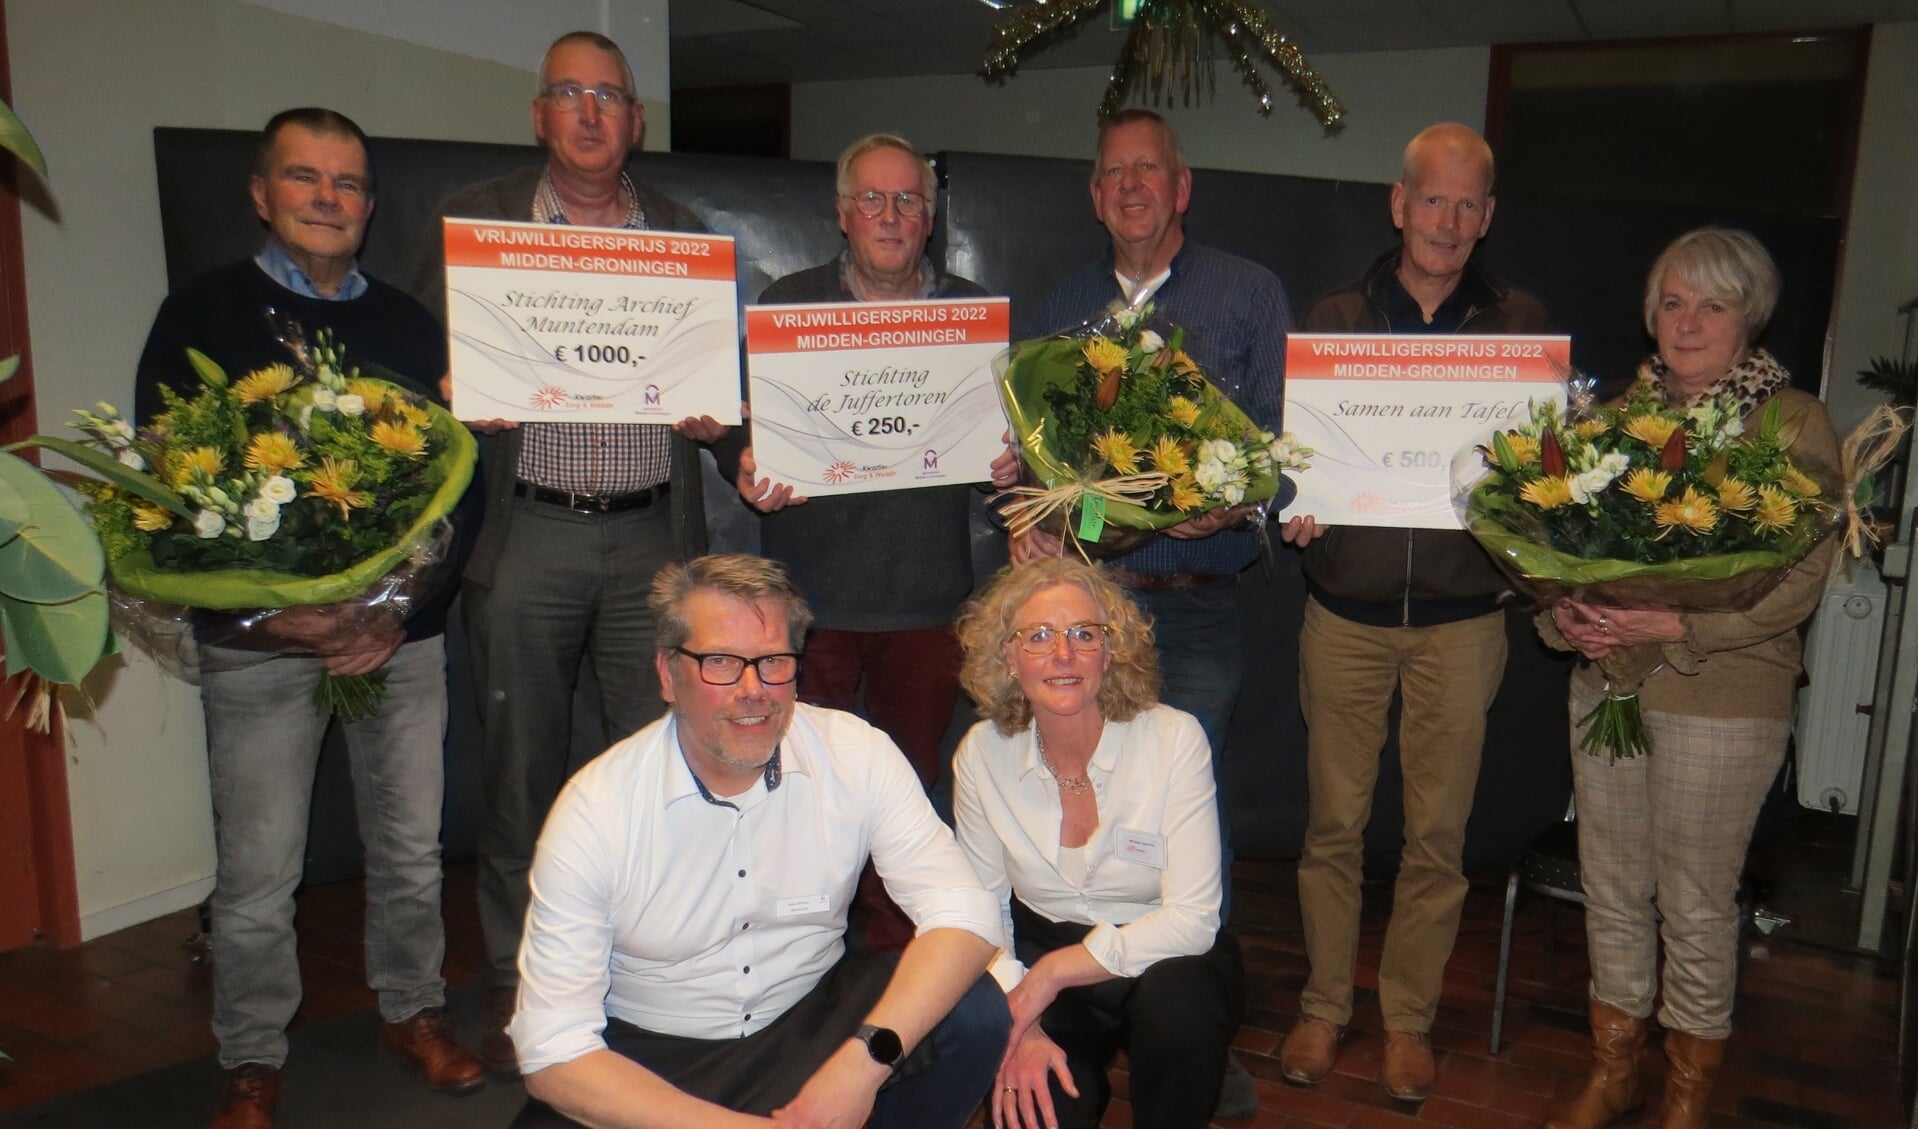 De winnaars met hun cheque: Archief Muntendam, Juffertoren en Samen aan Tafel. Op de voorgrond wethouder Offereins en Kwartier-directeur Adriana Jaarsma.